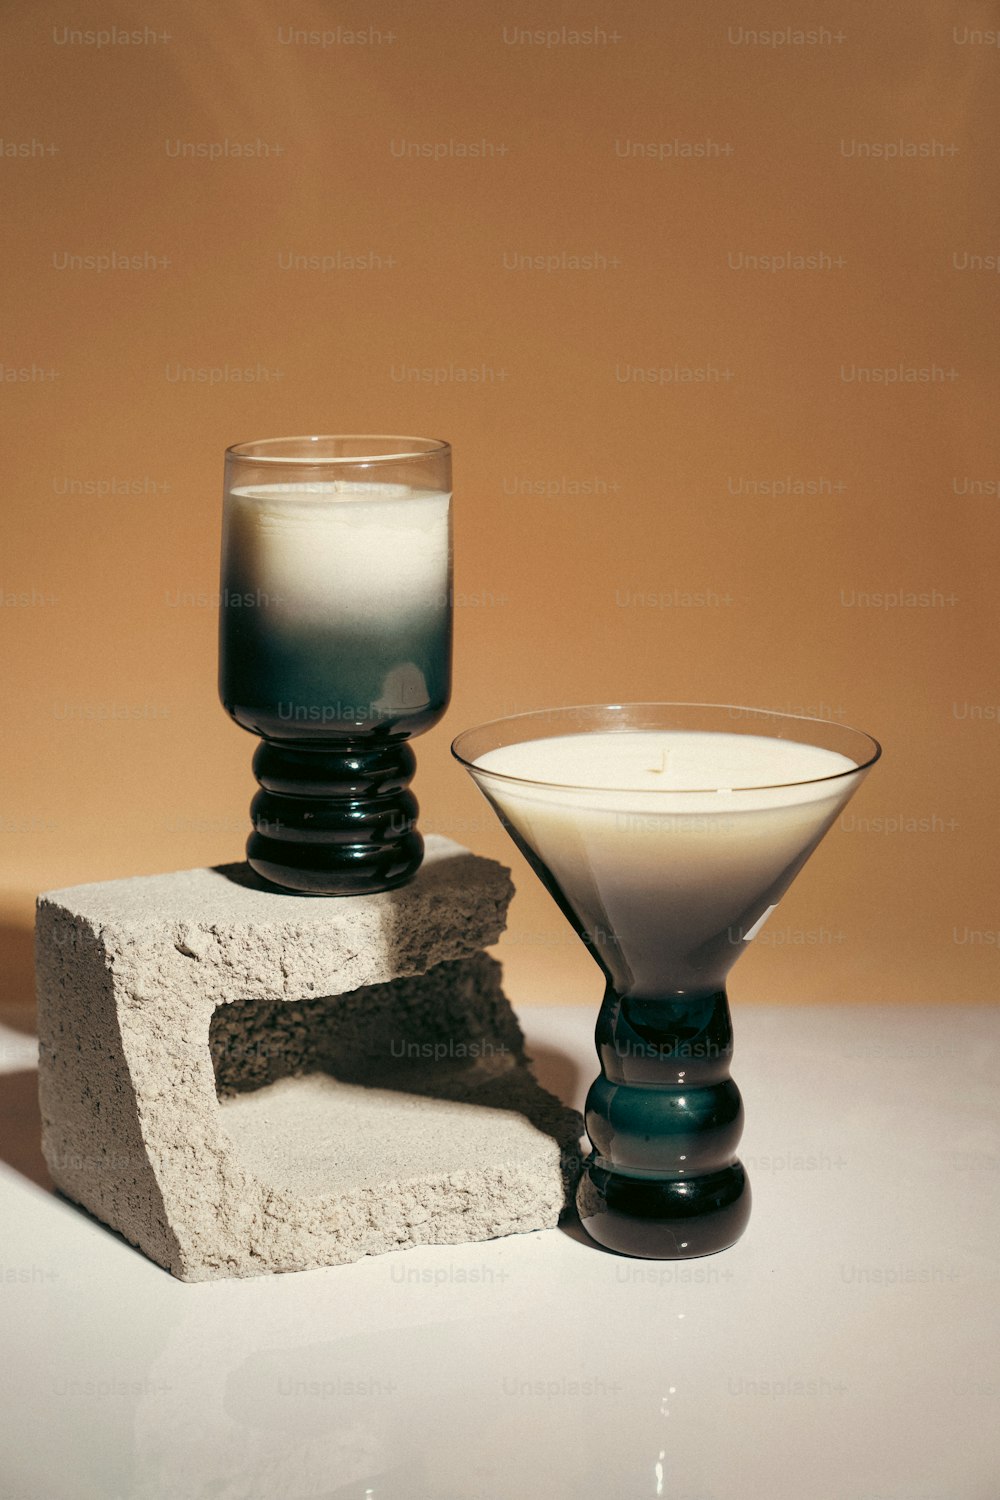 Un vaso de leche sentado junto a un bloque de cemento